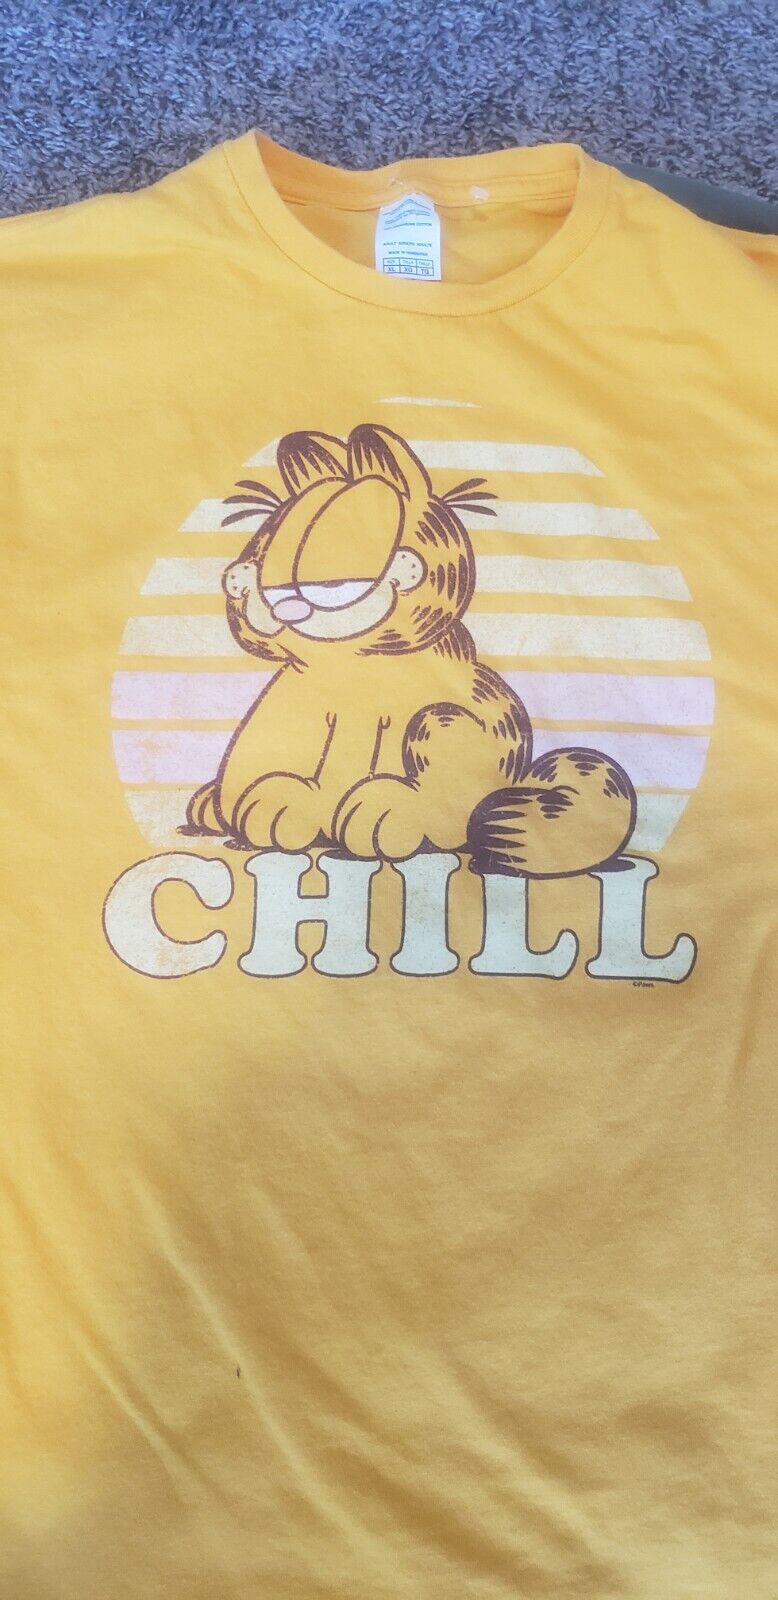 Garfield shirt - Gem